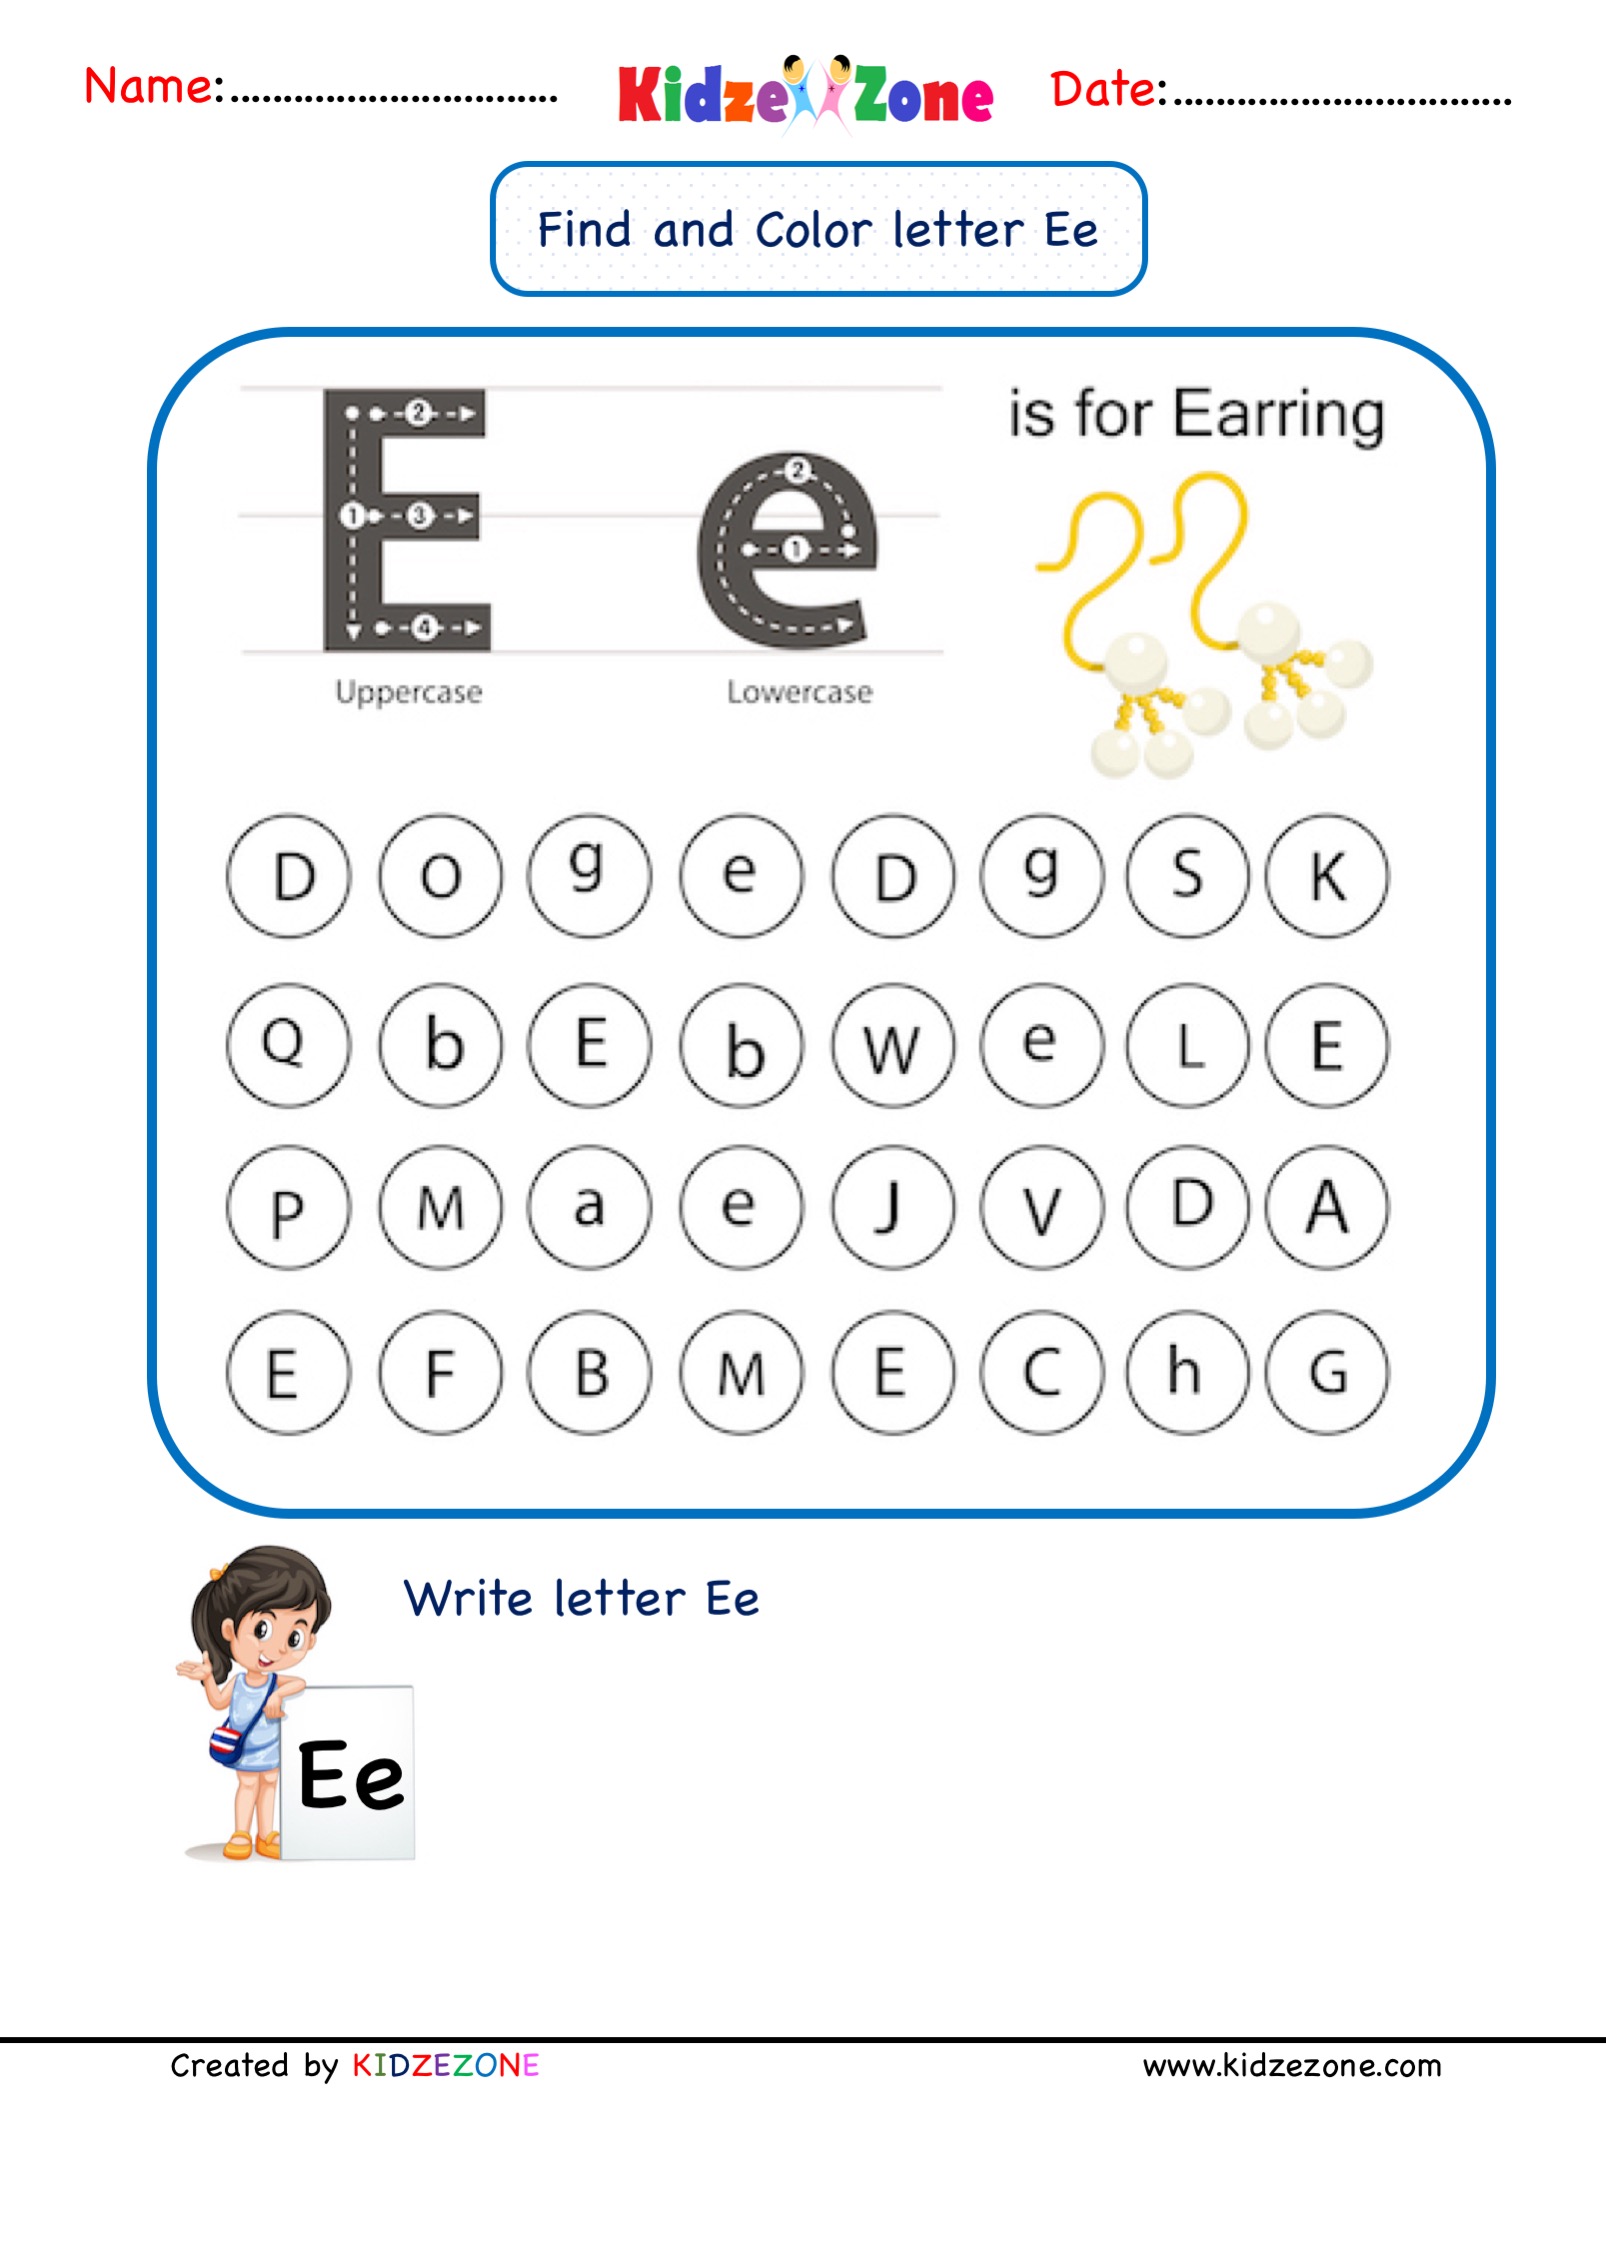 kindergarten-letter-e-worksheets-find-and-color-kidzezone